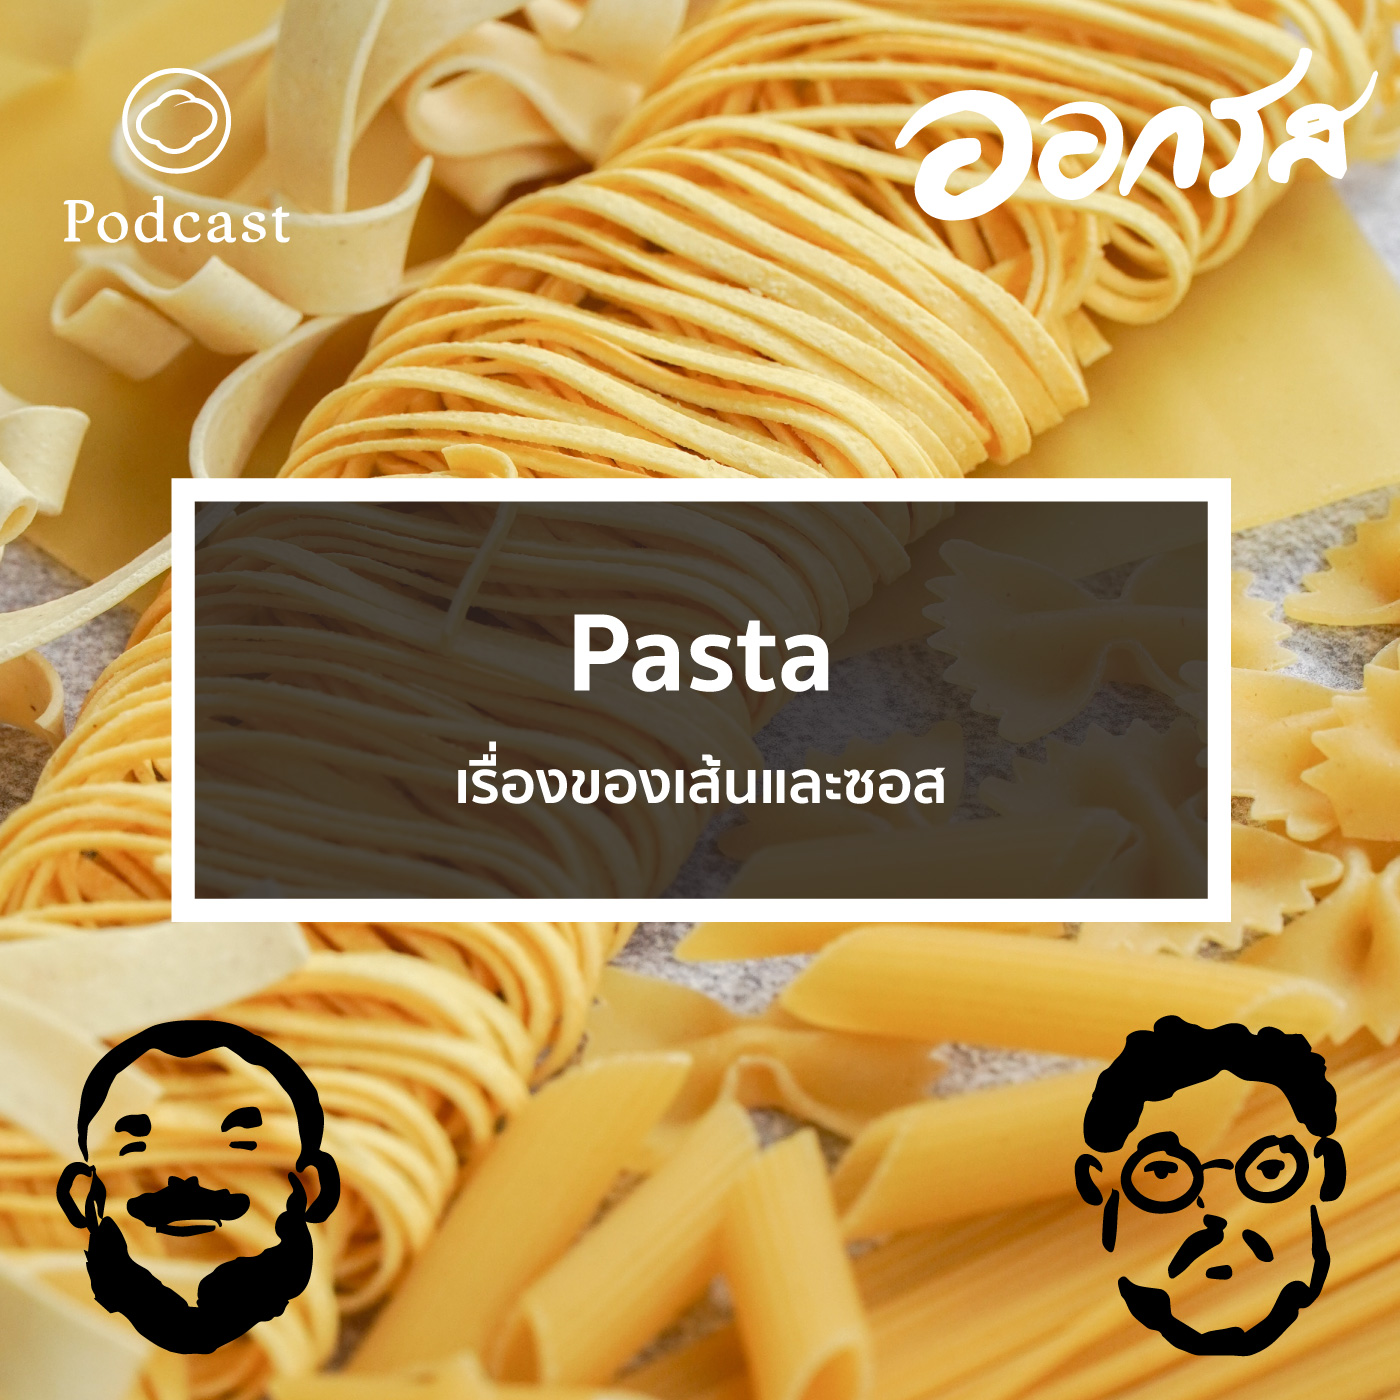 EP. 60 Pasta : เรื่องของเส้นและซอส - The Cloud Podcast